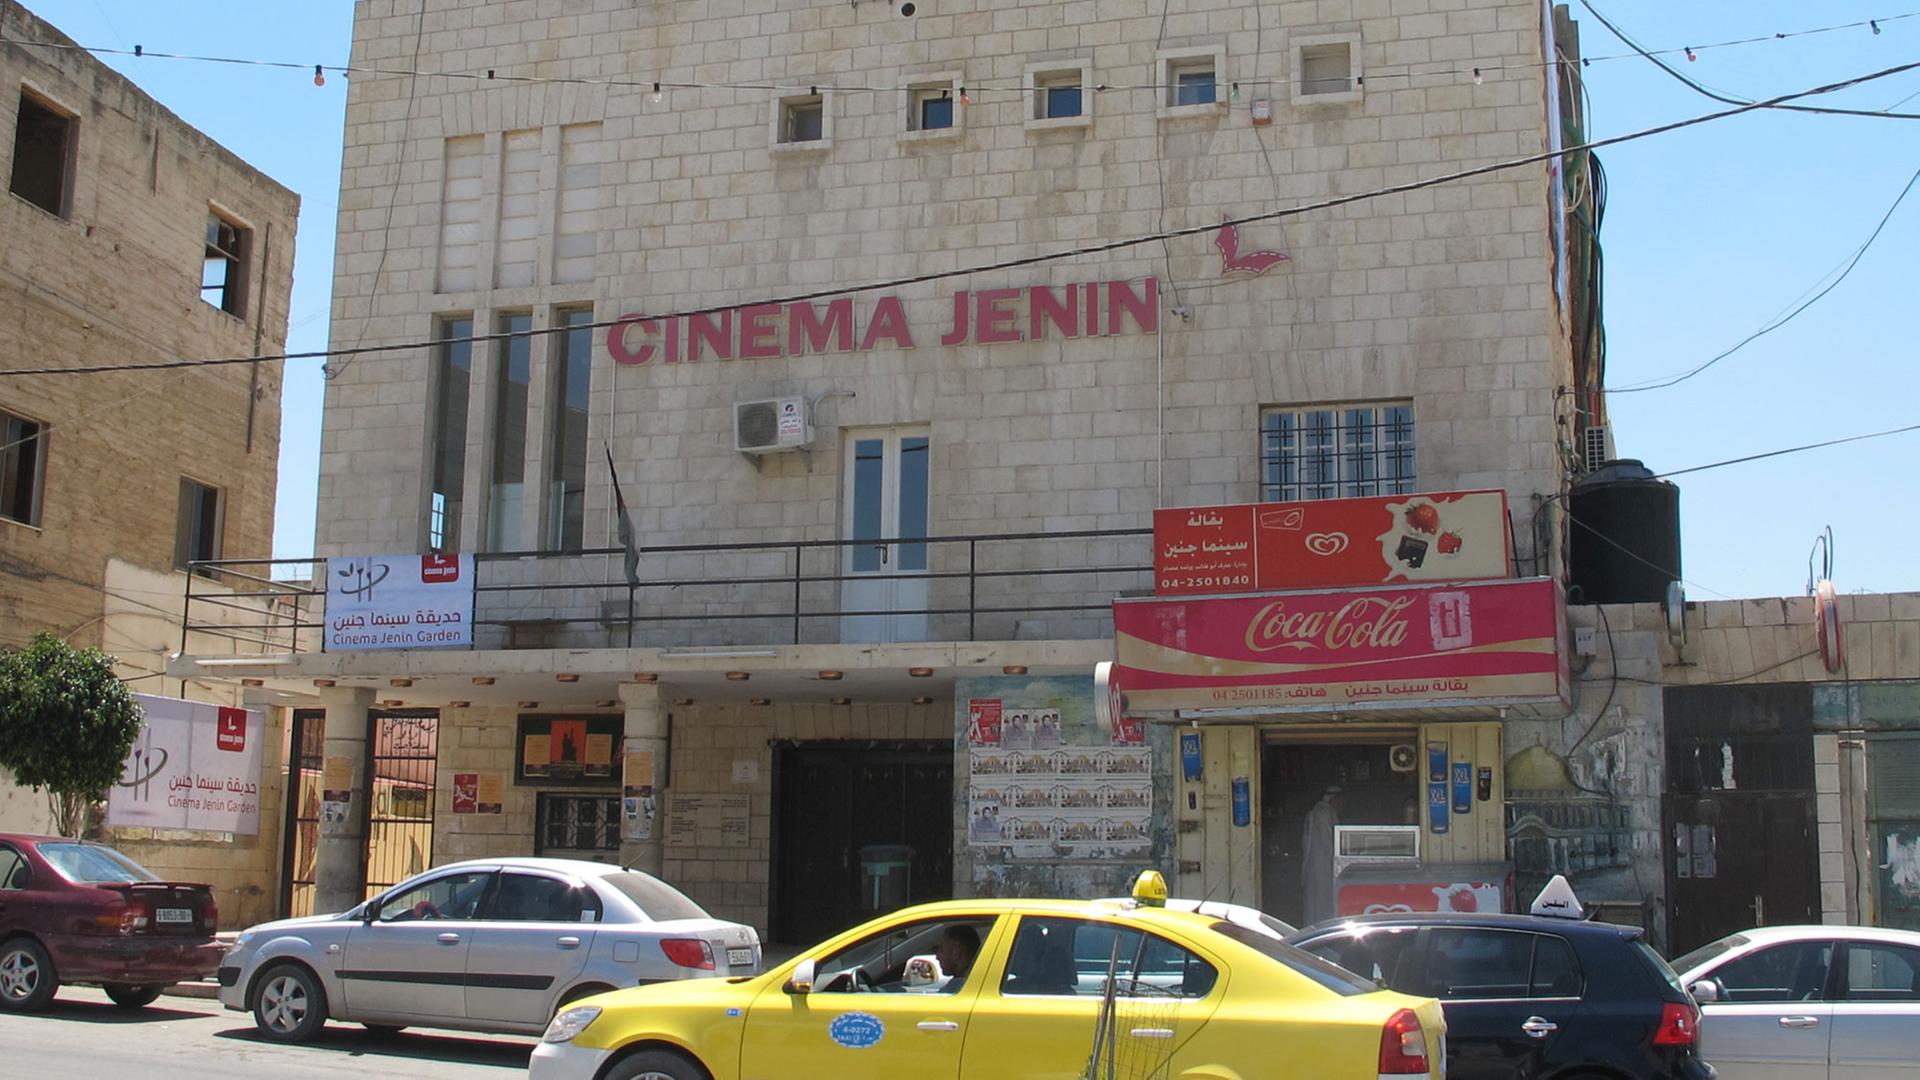 So sah das Cinema Jenin aus - nun ist es Geschichte